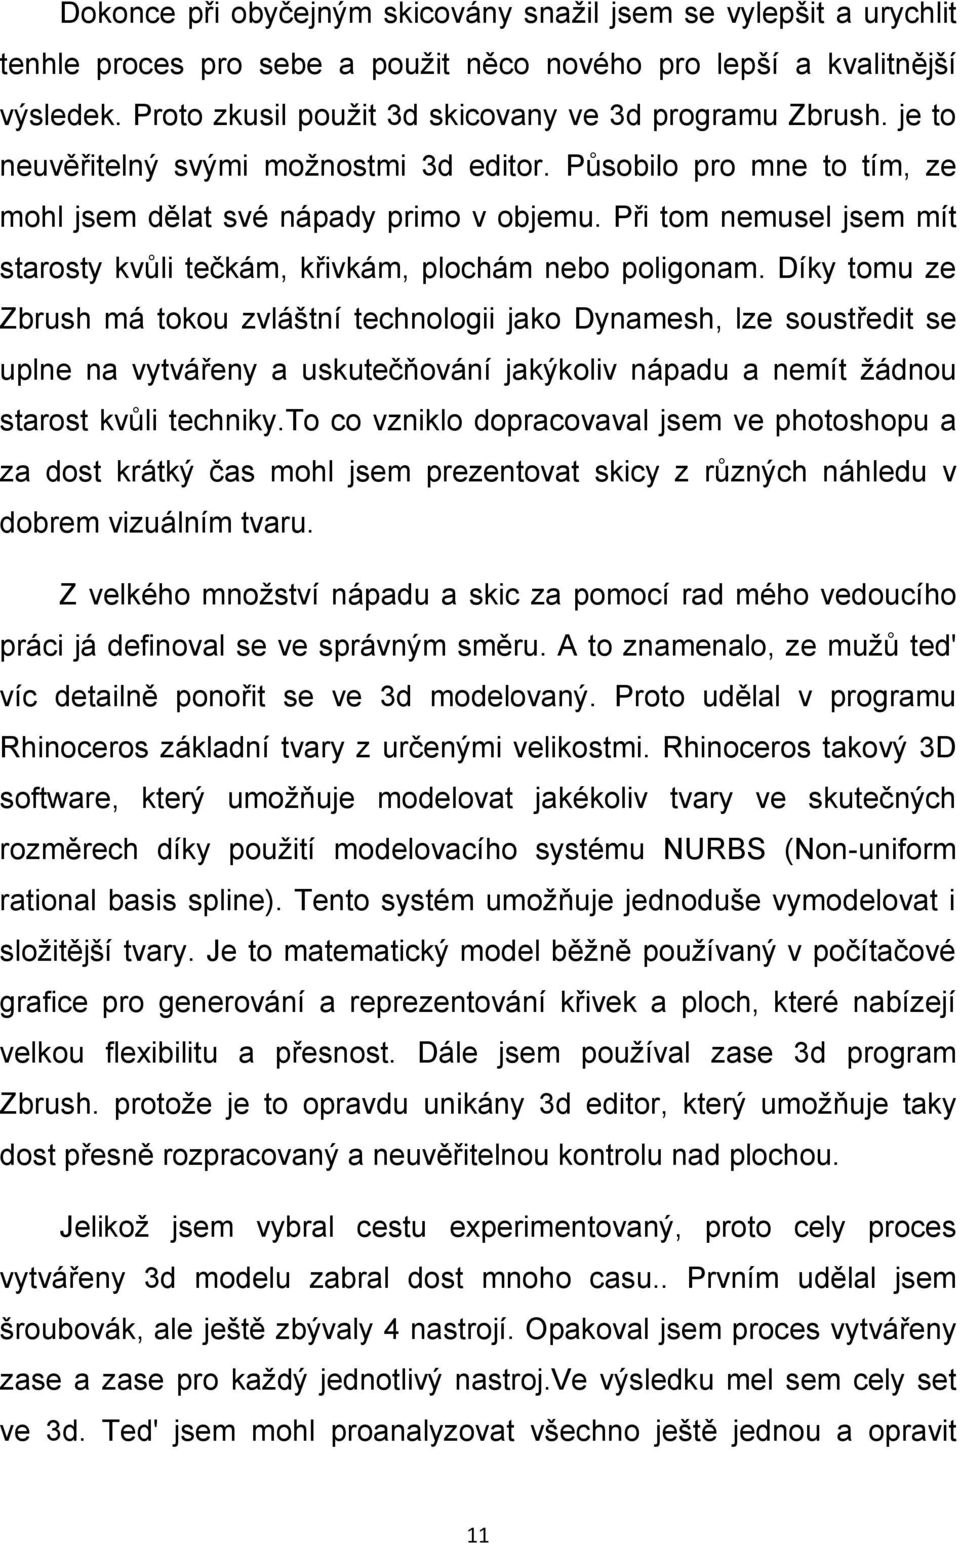 Díky tomu ze Zbrush má tokou zvláštní technologii jako Dynamesh, lze soustředit se uplne na vytvářeny a uskutečňování jakýkoliv nápadu a nemít žádnou starost kvůli techniky.